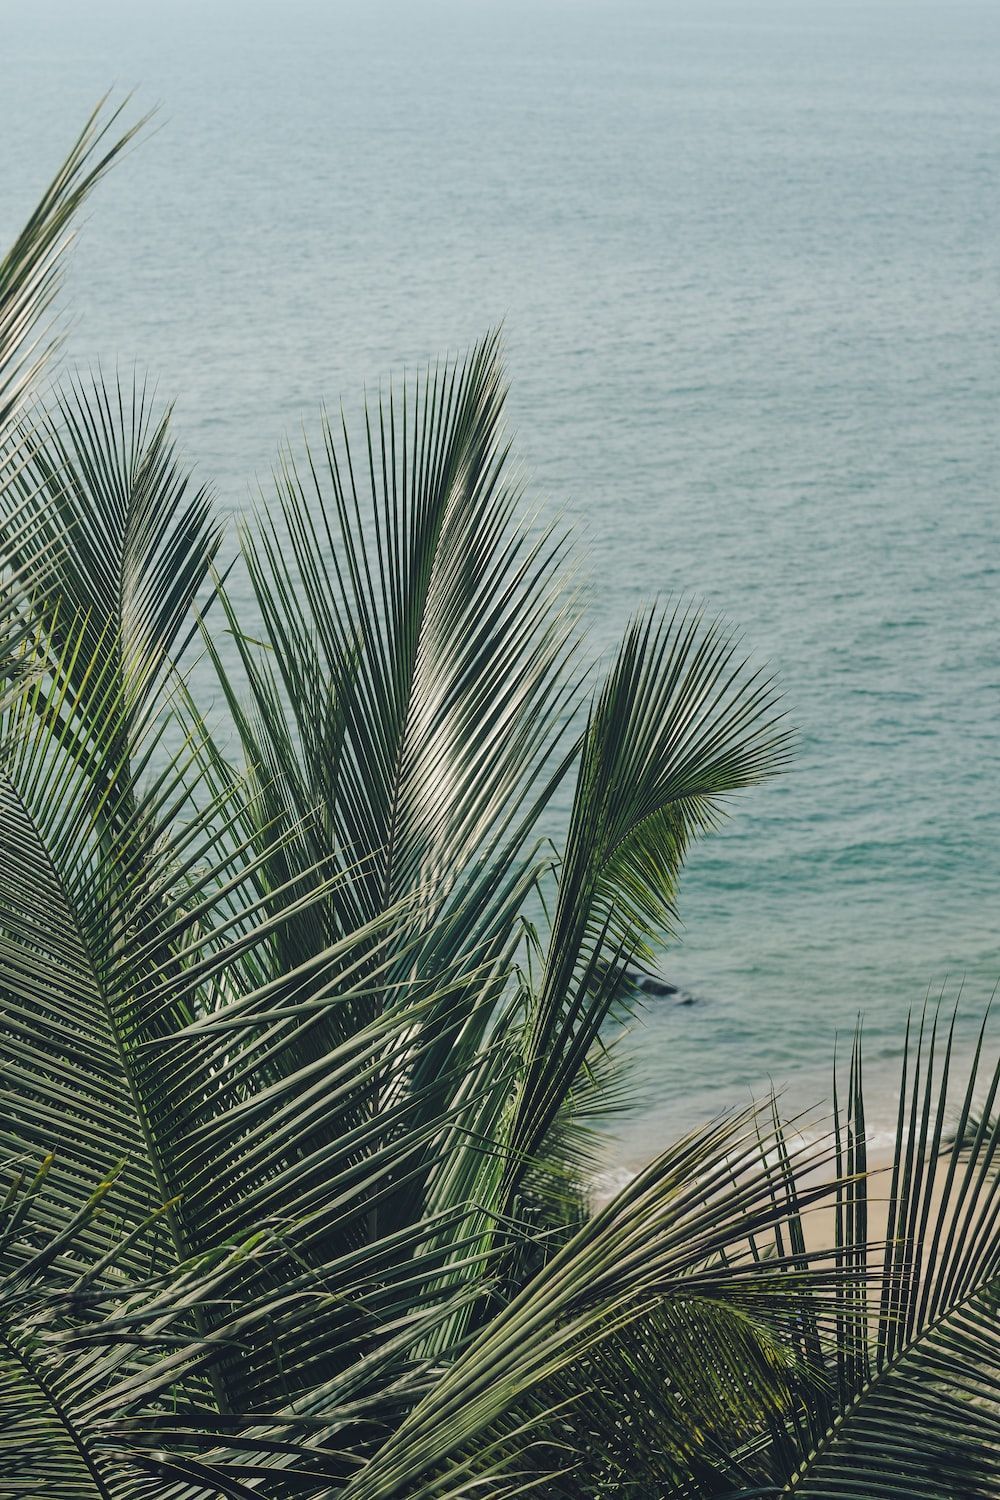  Meer Hintergrundbild 1000x1500. Foto zum Thema Blick auf einen strand mit palmen und das meer im hintergrund